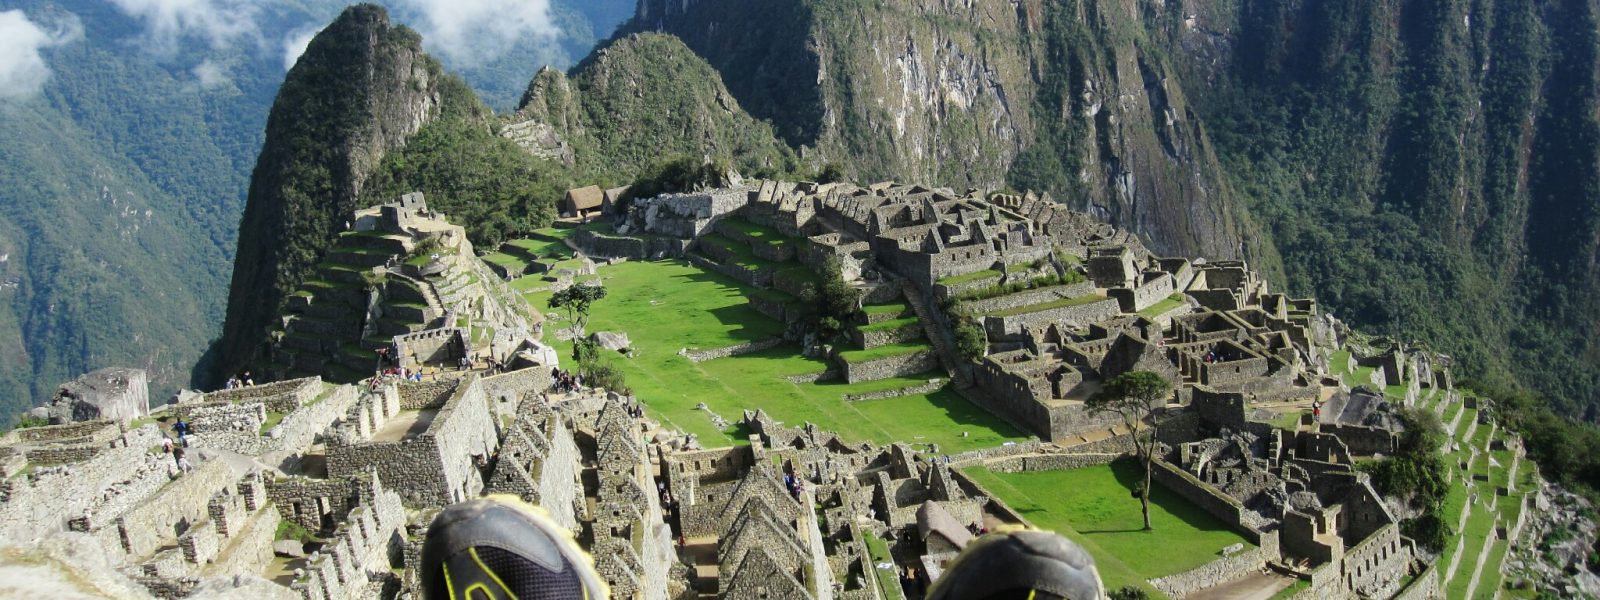 Peru: The Inca Trail to Macchu Picchu – Sun Gate